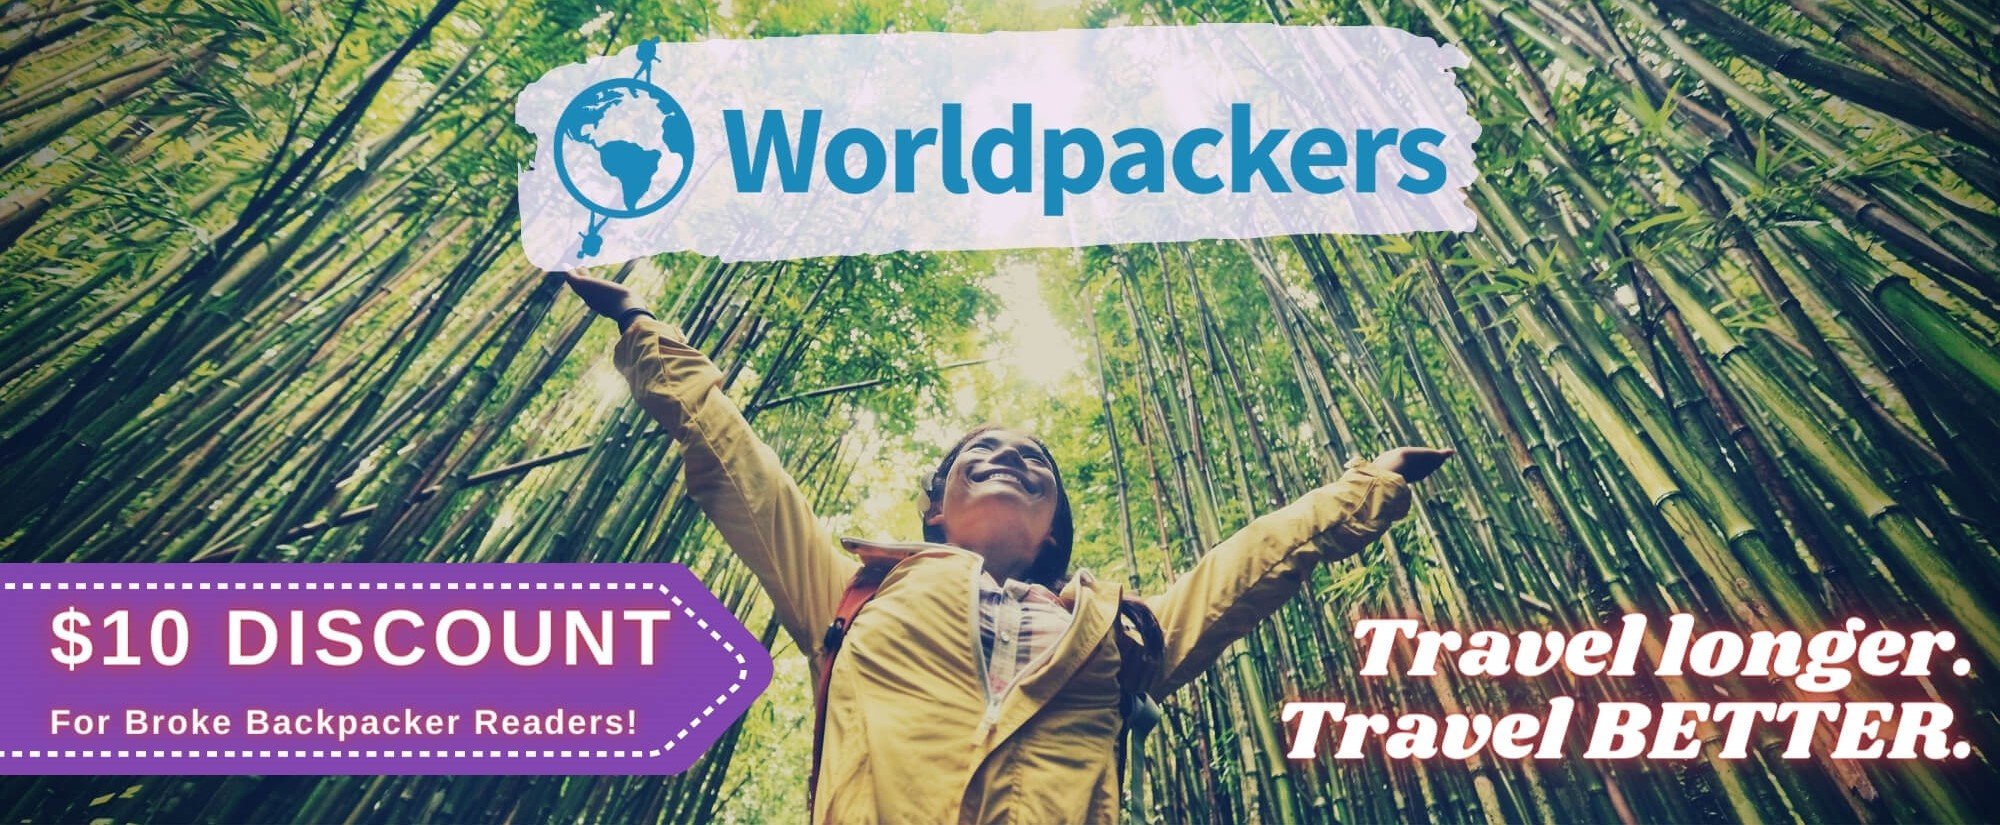 immagine del banner della spina di worldpackers